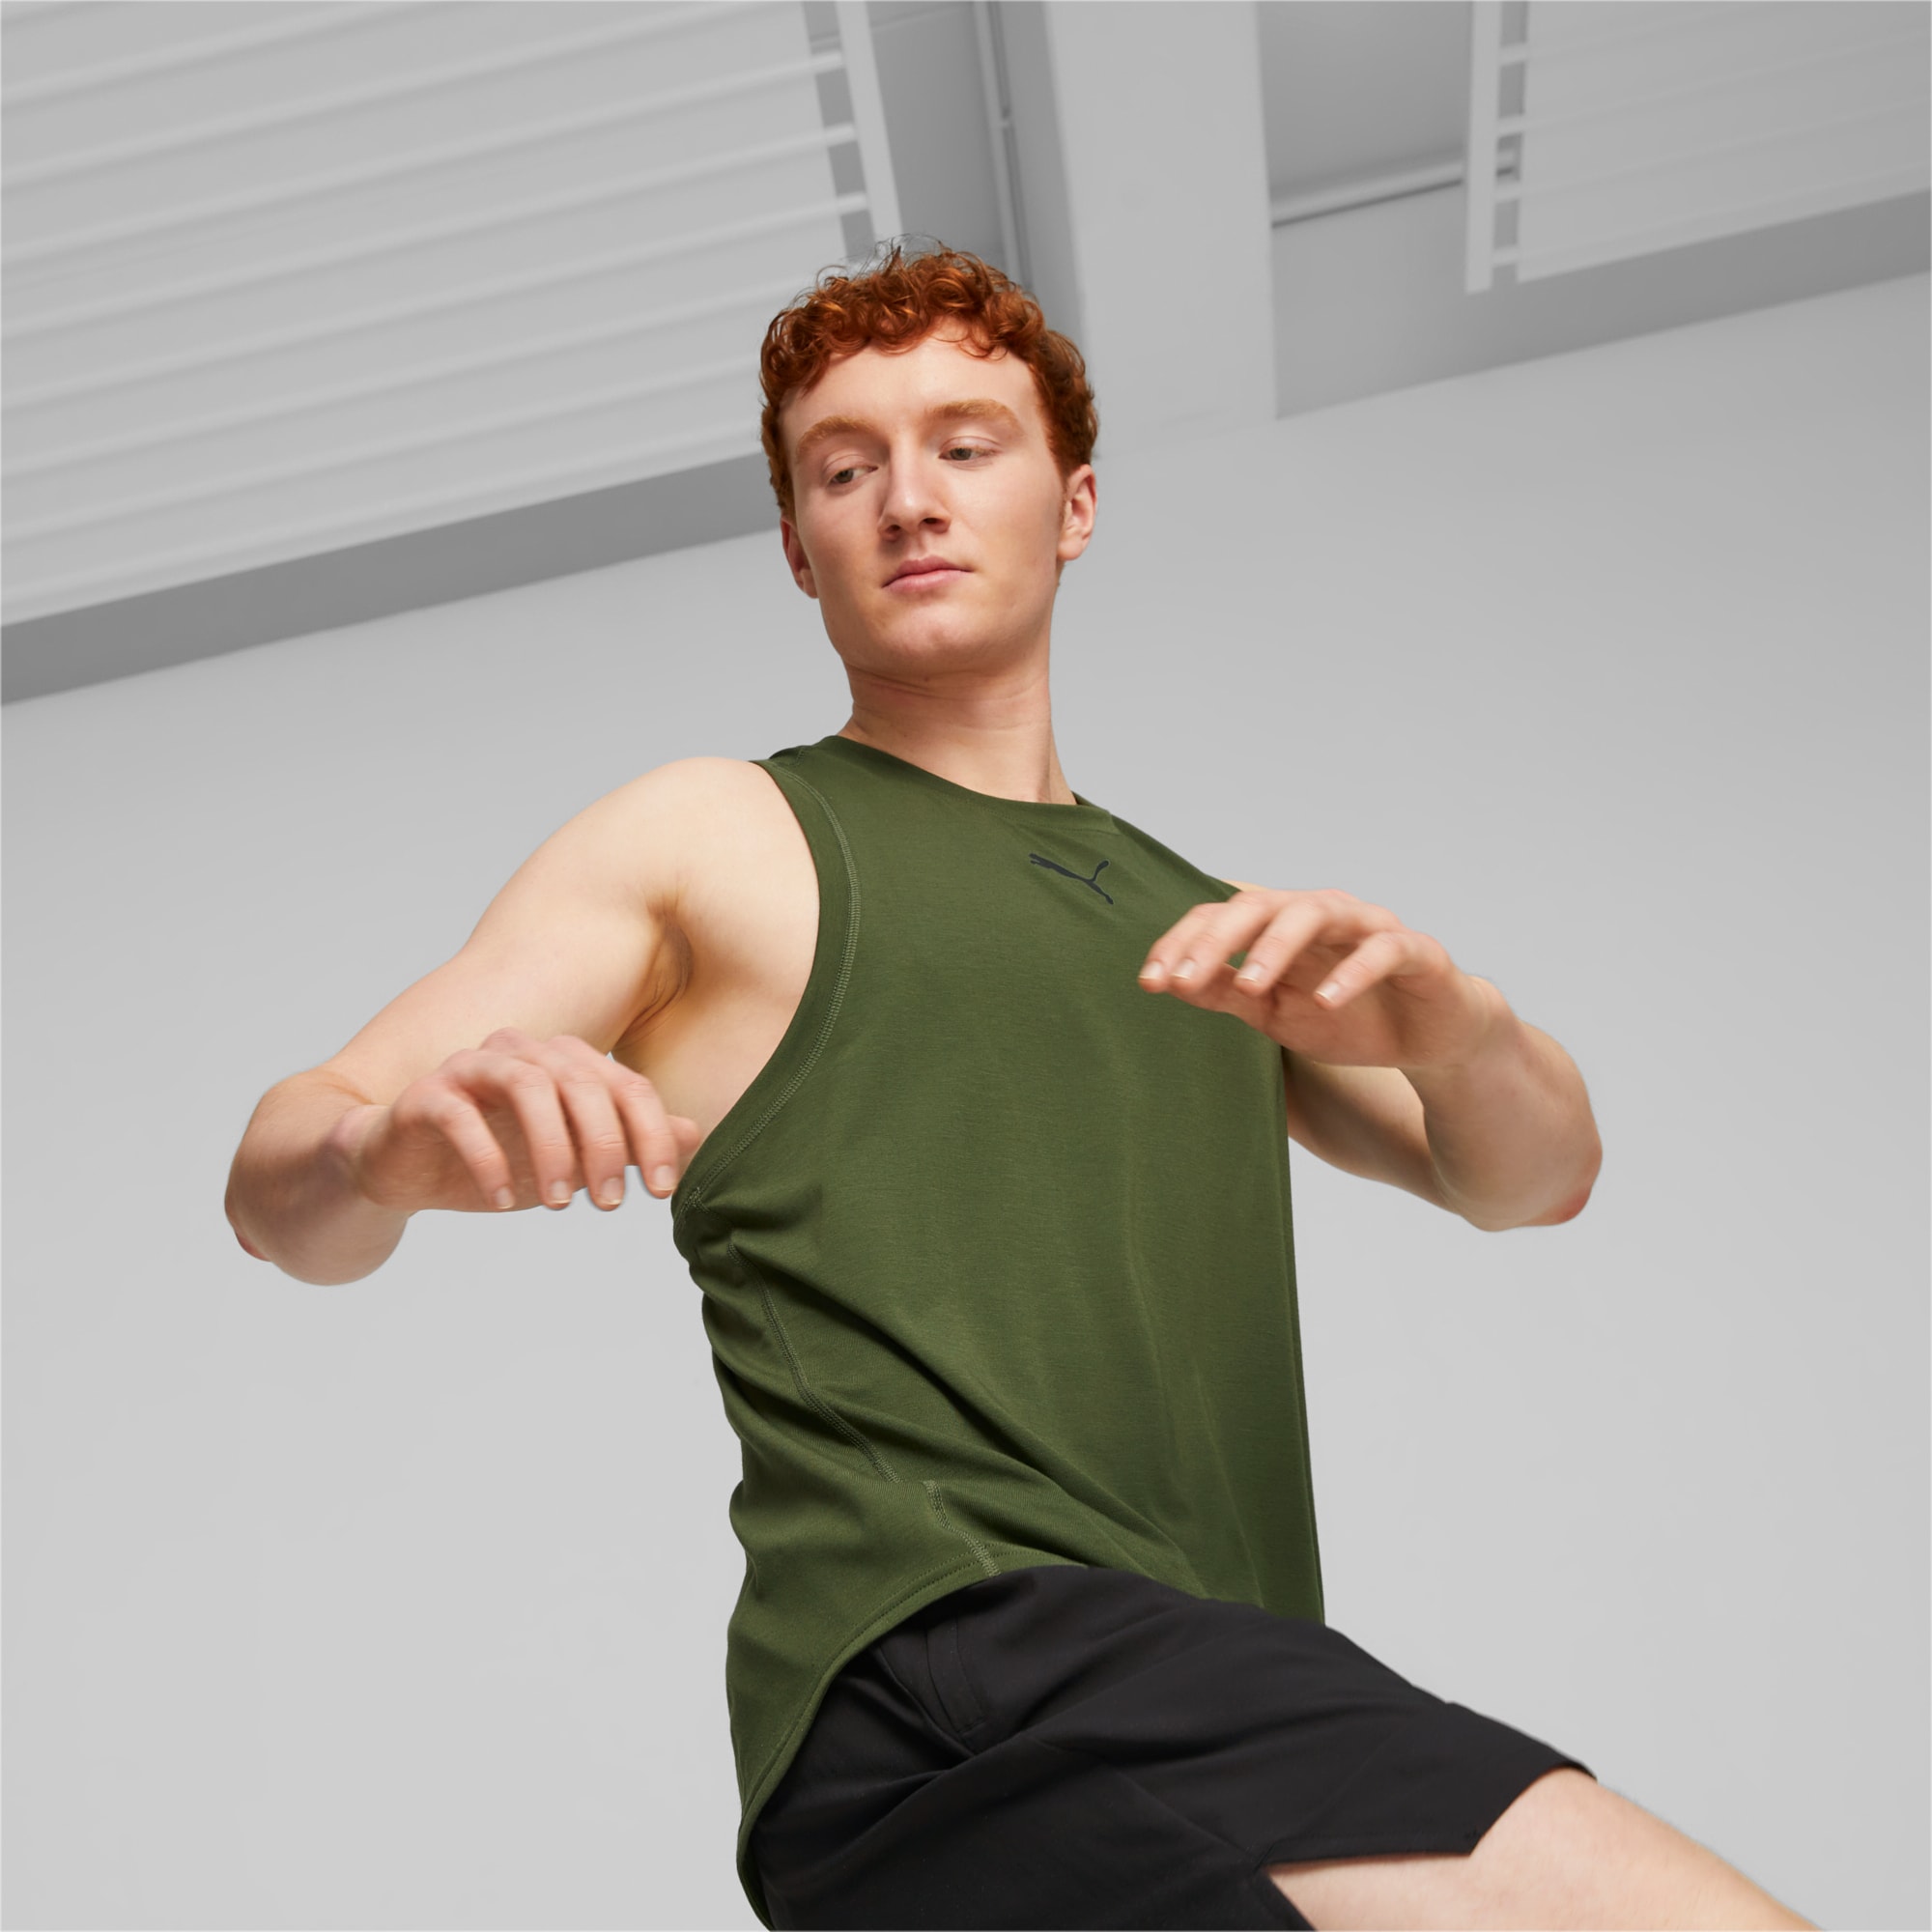 Gymshark Cotton Blend Running Training Tank Top (Men's Small) Green